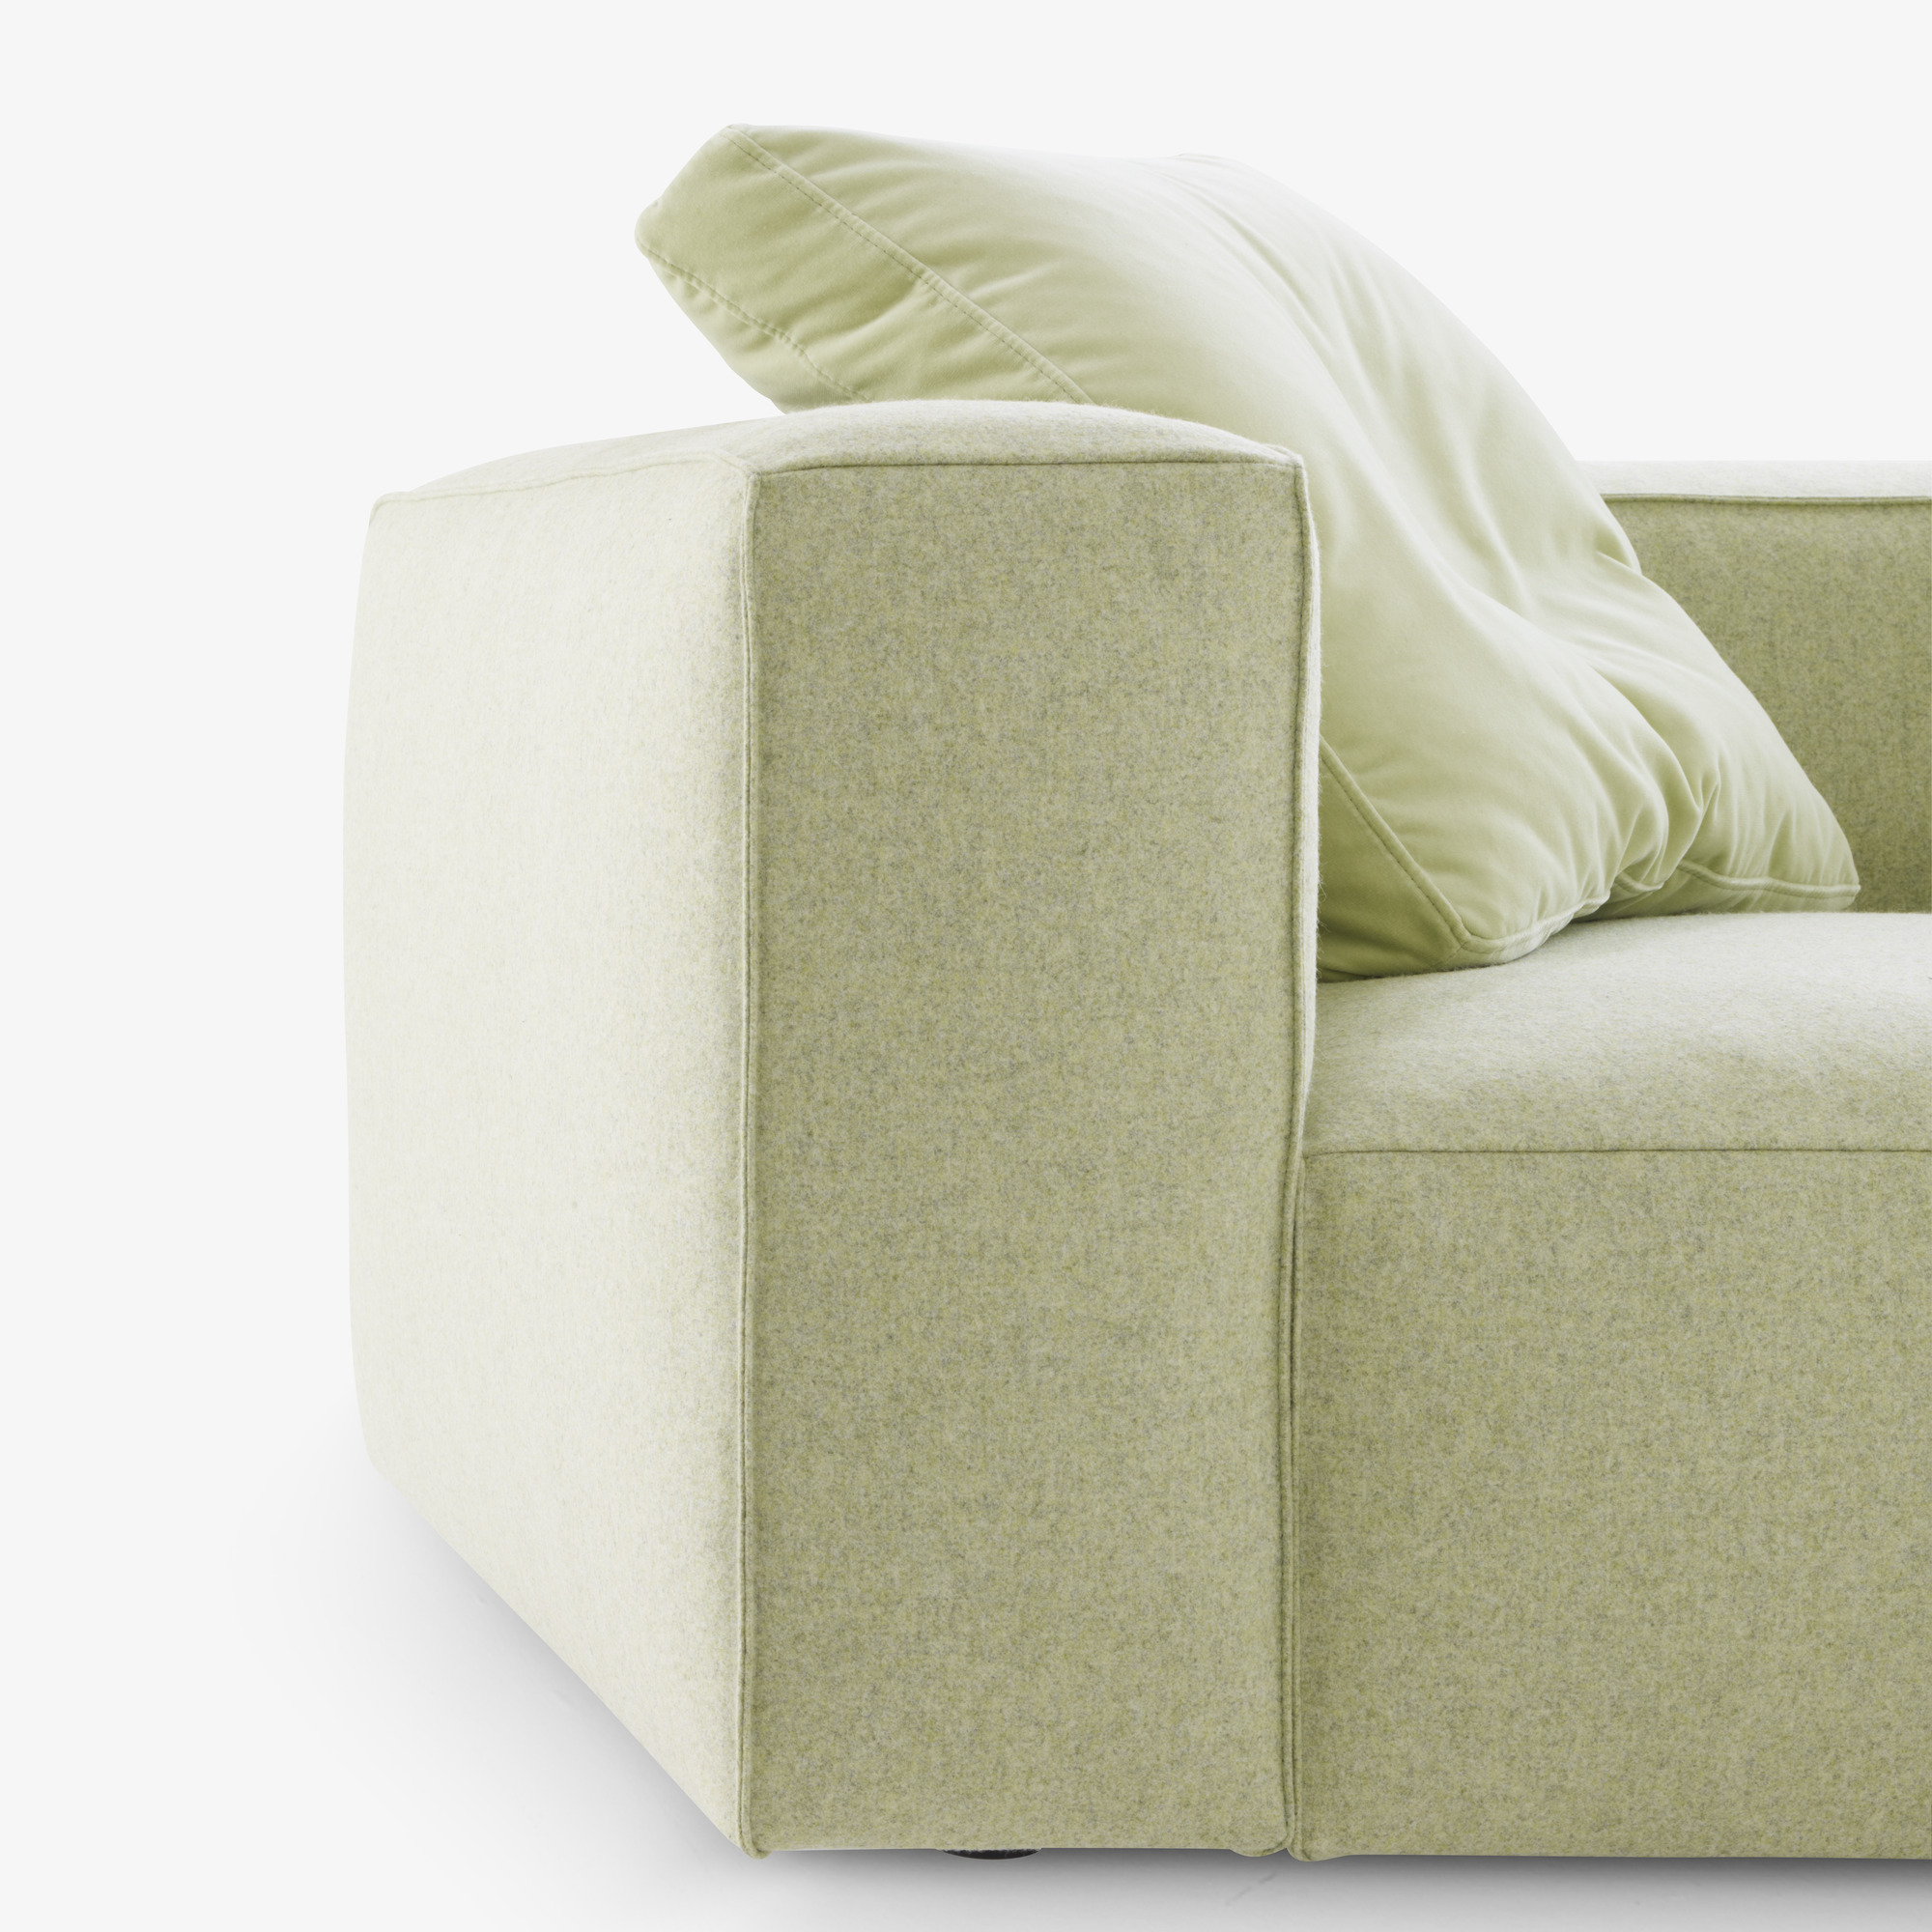 Image Medium sofa complete element  2